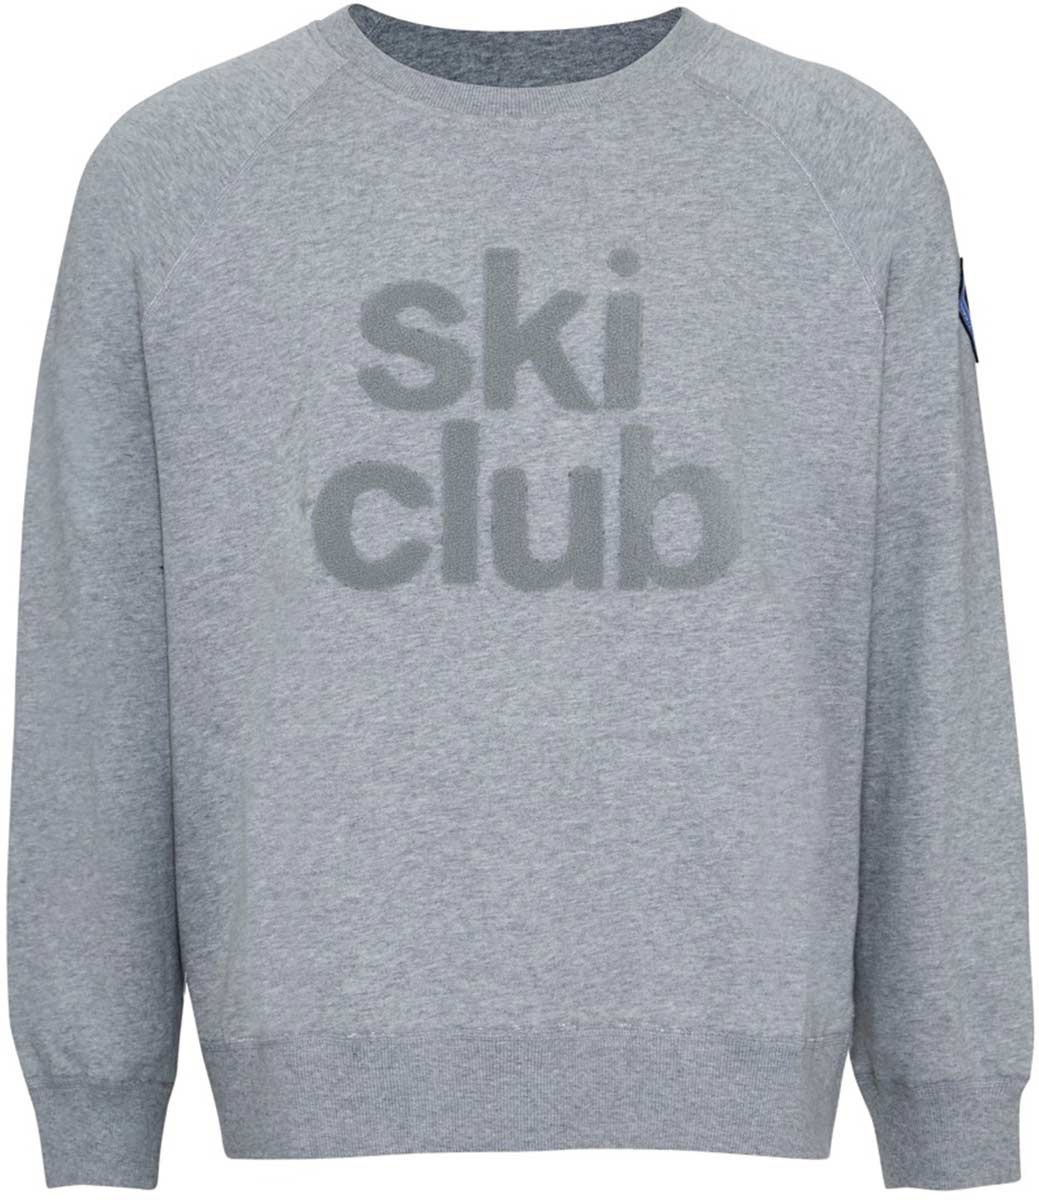 black crows Ski Club Sweatshirt, $109.95